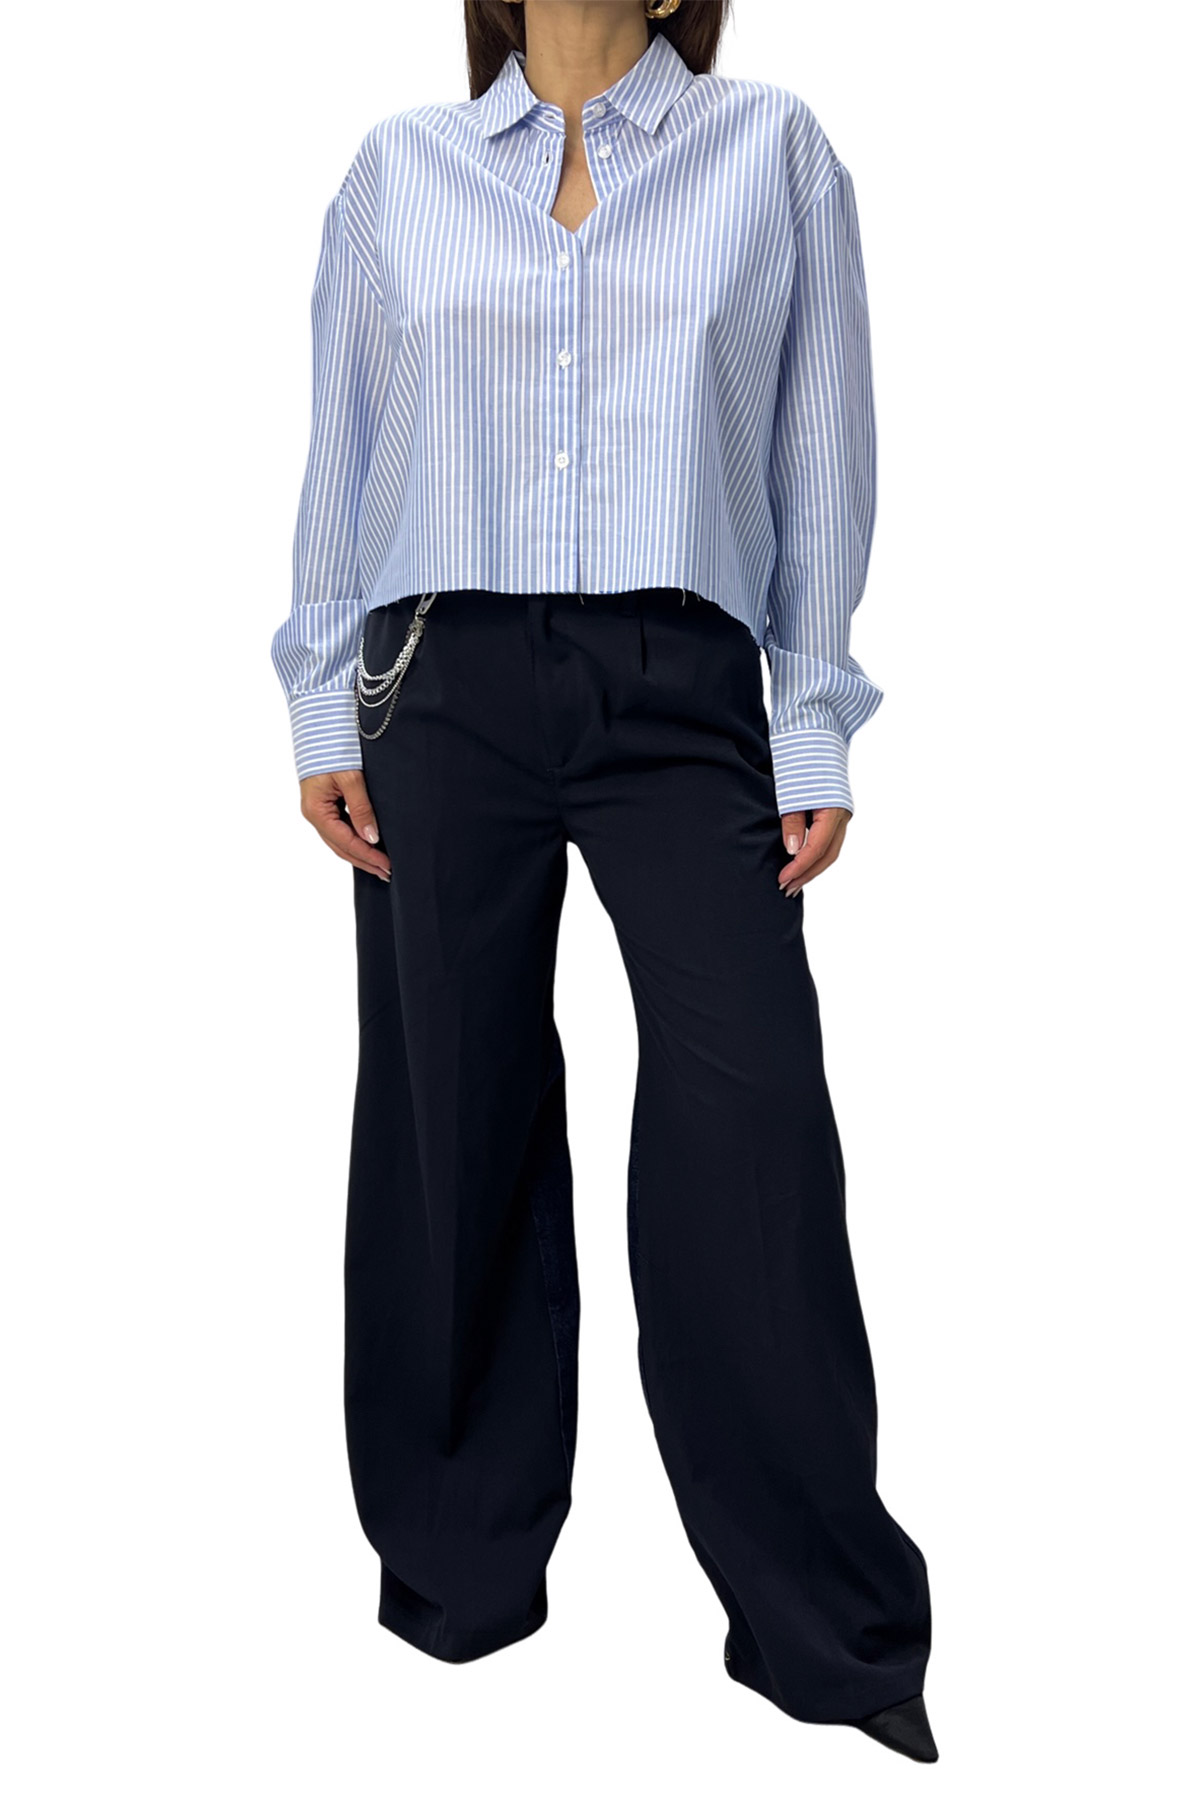 Pantalone donna in doppio tessuto cotone e denim vita alta gamba ampia
passacinta edettaglio keychain